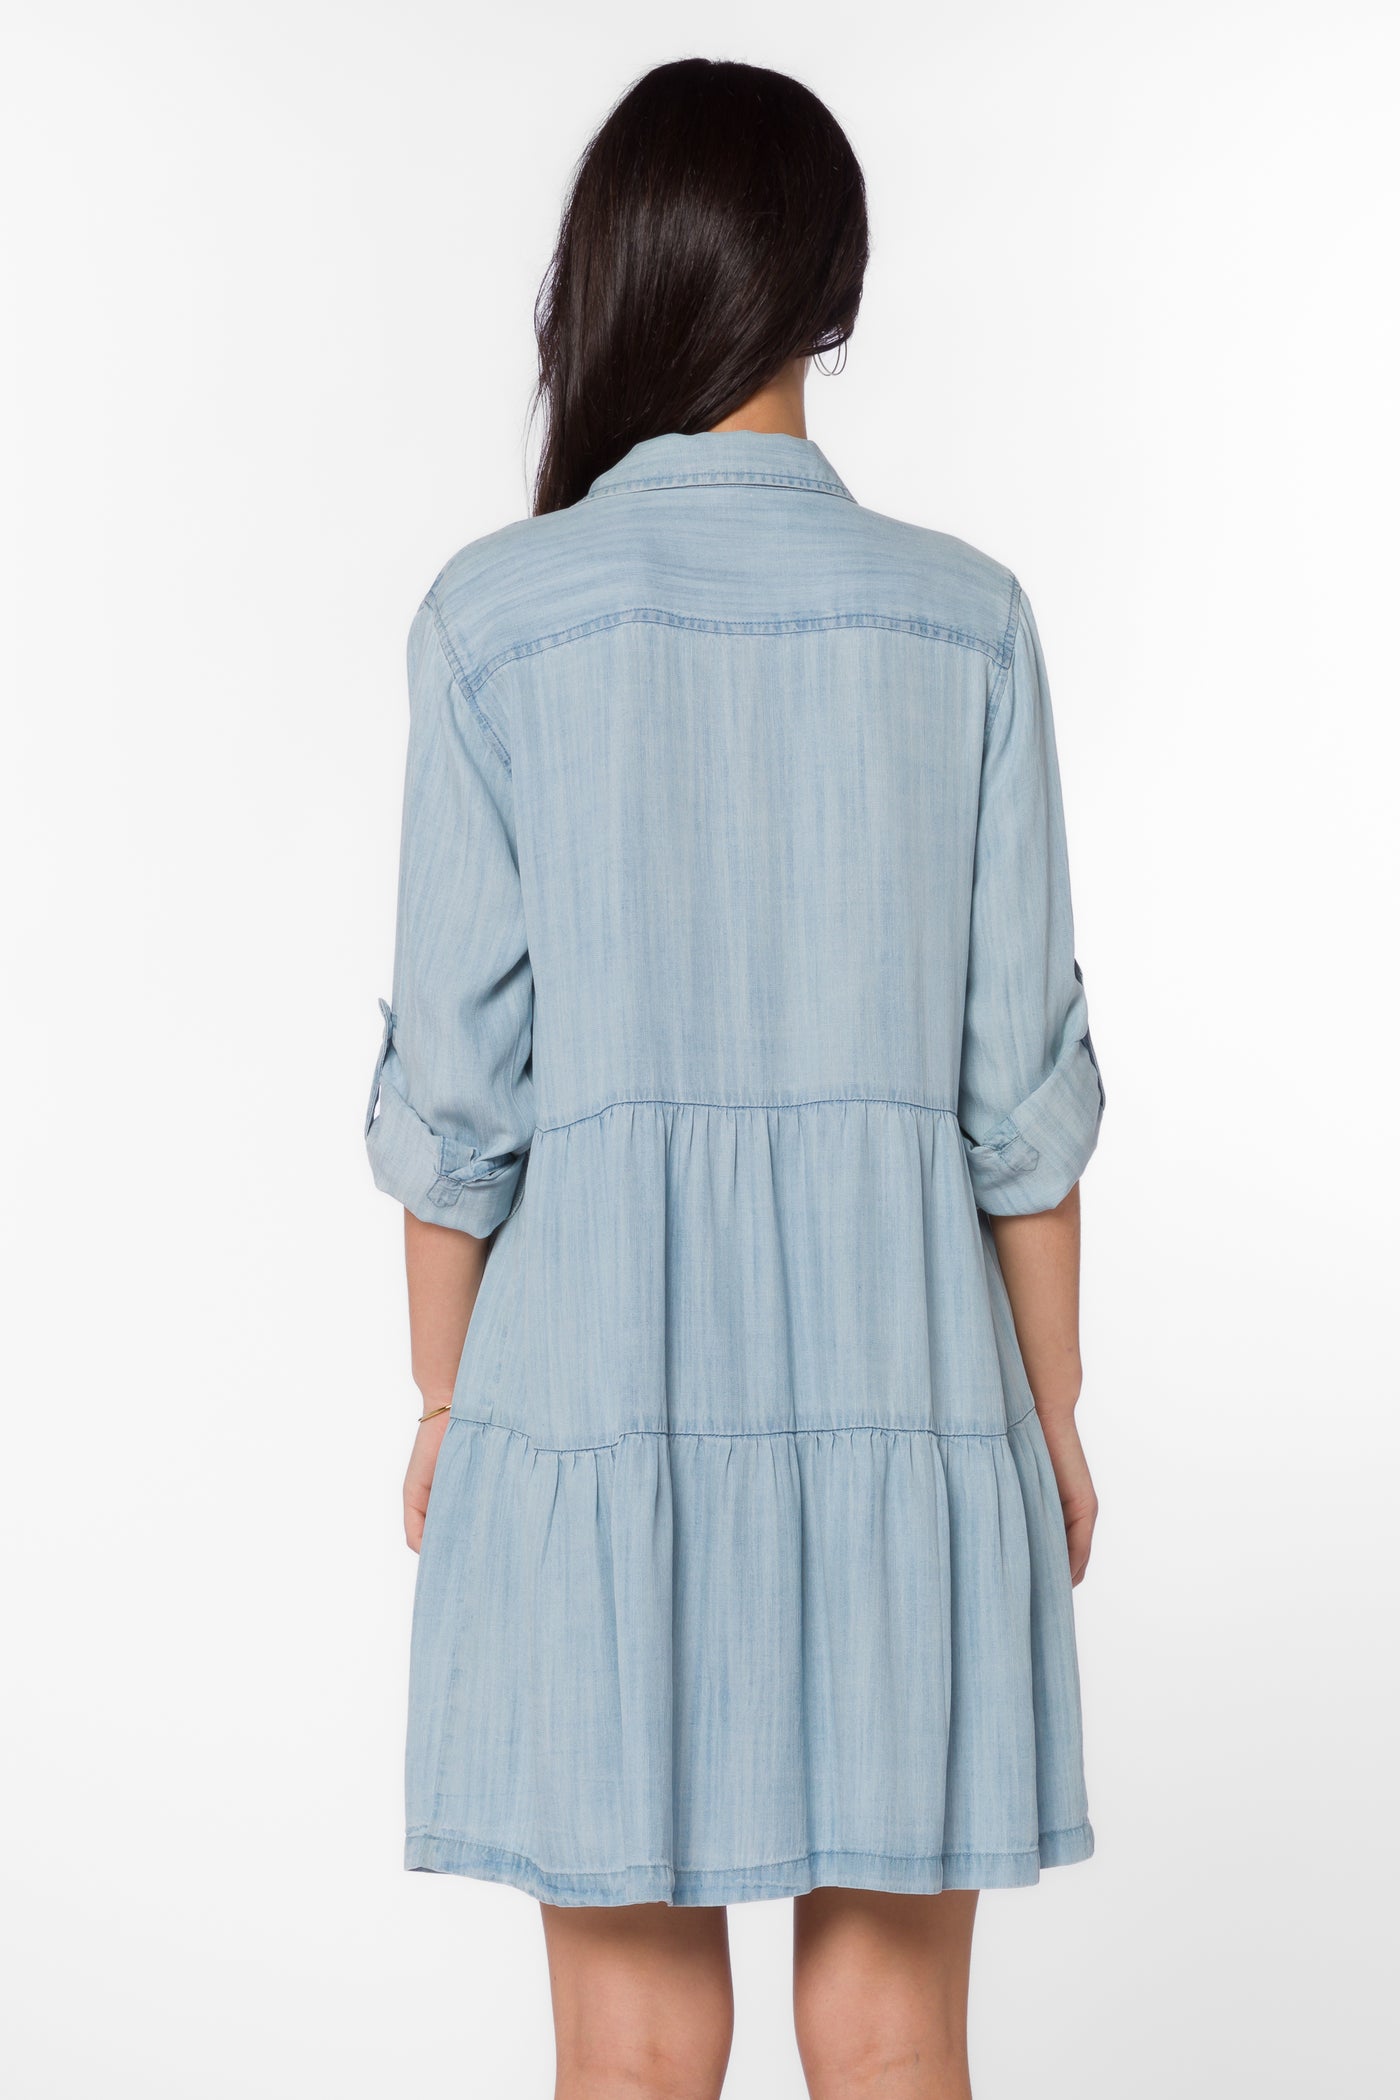 Bree Visalia Blue Dress - Dresses - Velvet Heart Clothing